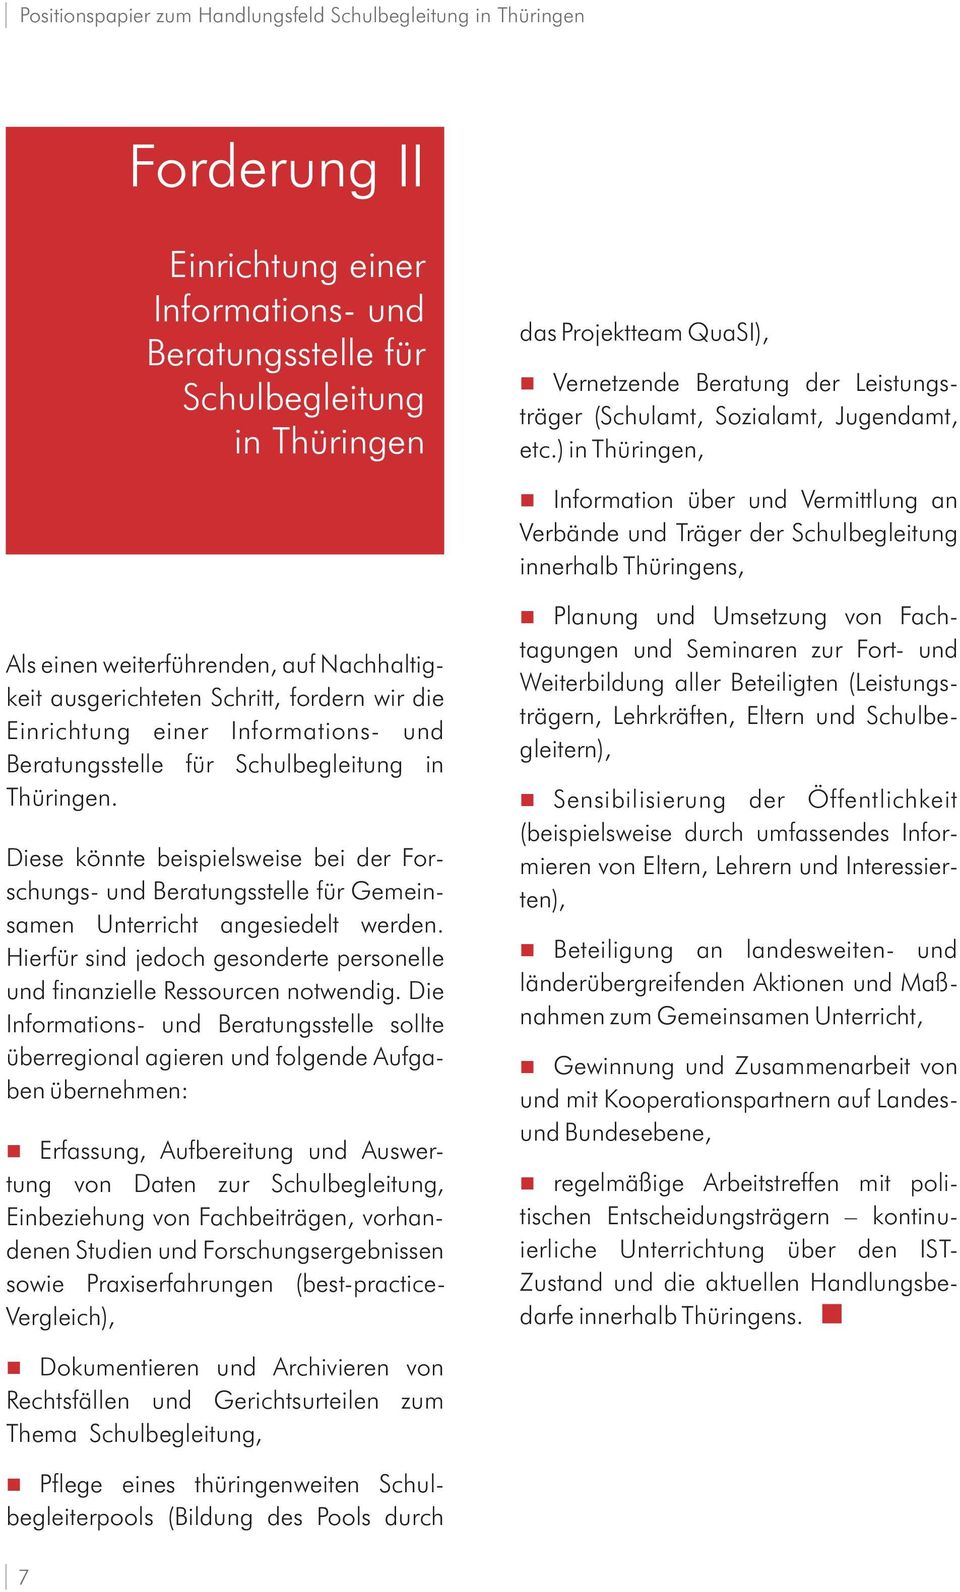 Einrichtung einer Informations- und Beratungsstelle für Schulbegleitung in Thüringen. Diese könnte beispielsweise bei der Forschungs- und Beratungsstelle für Gemeinsamen Unterricht angesiedelt werden.